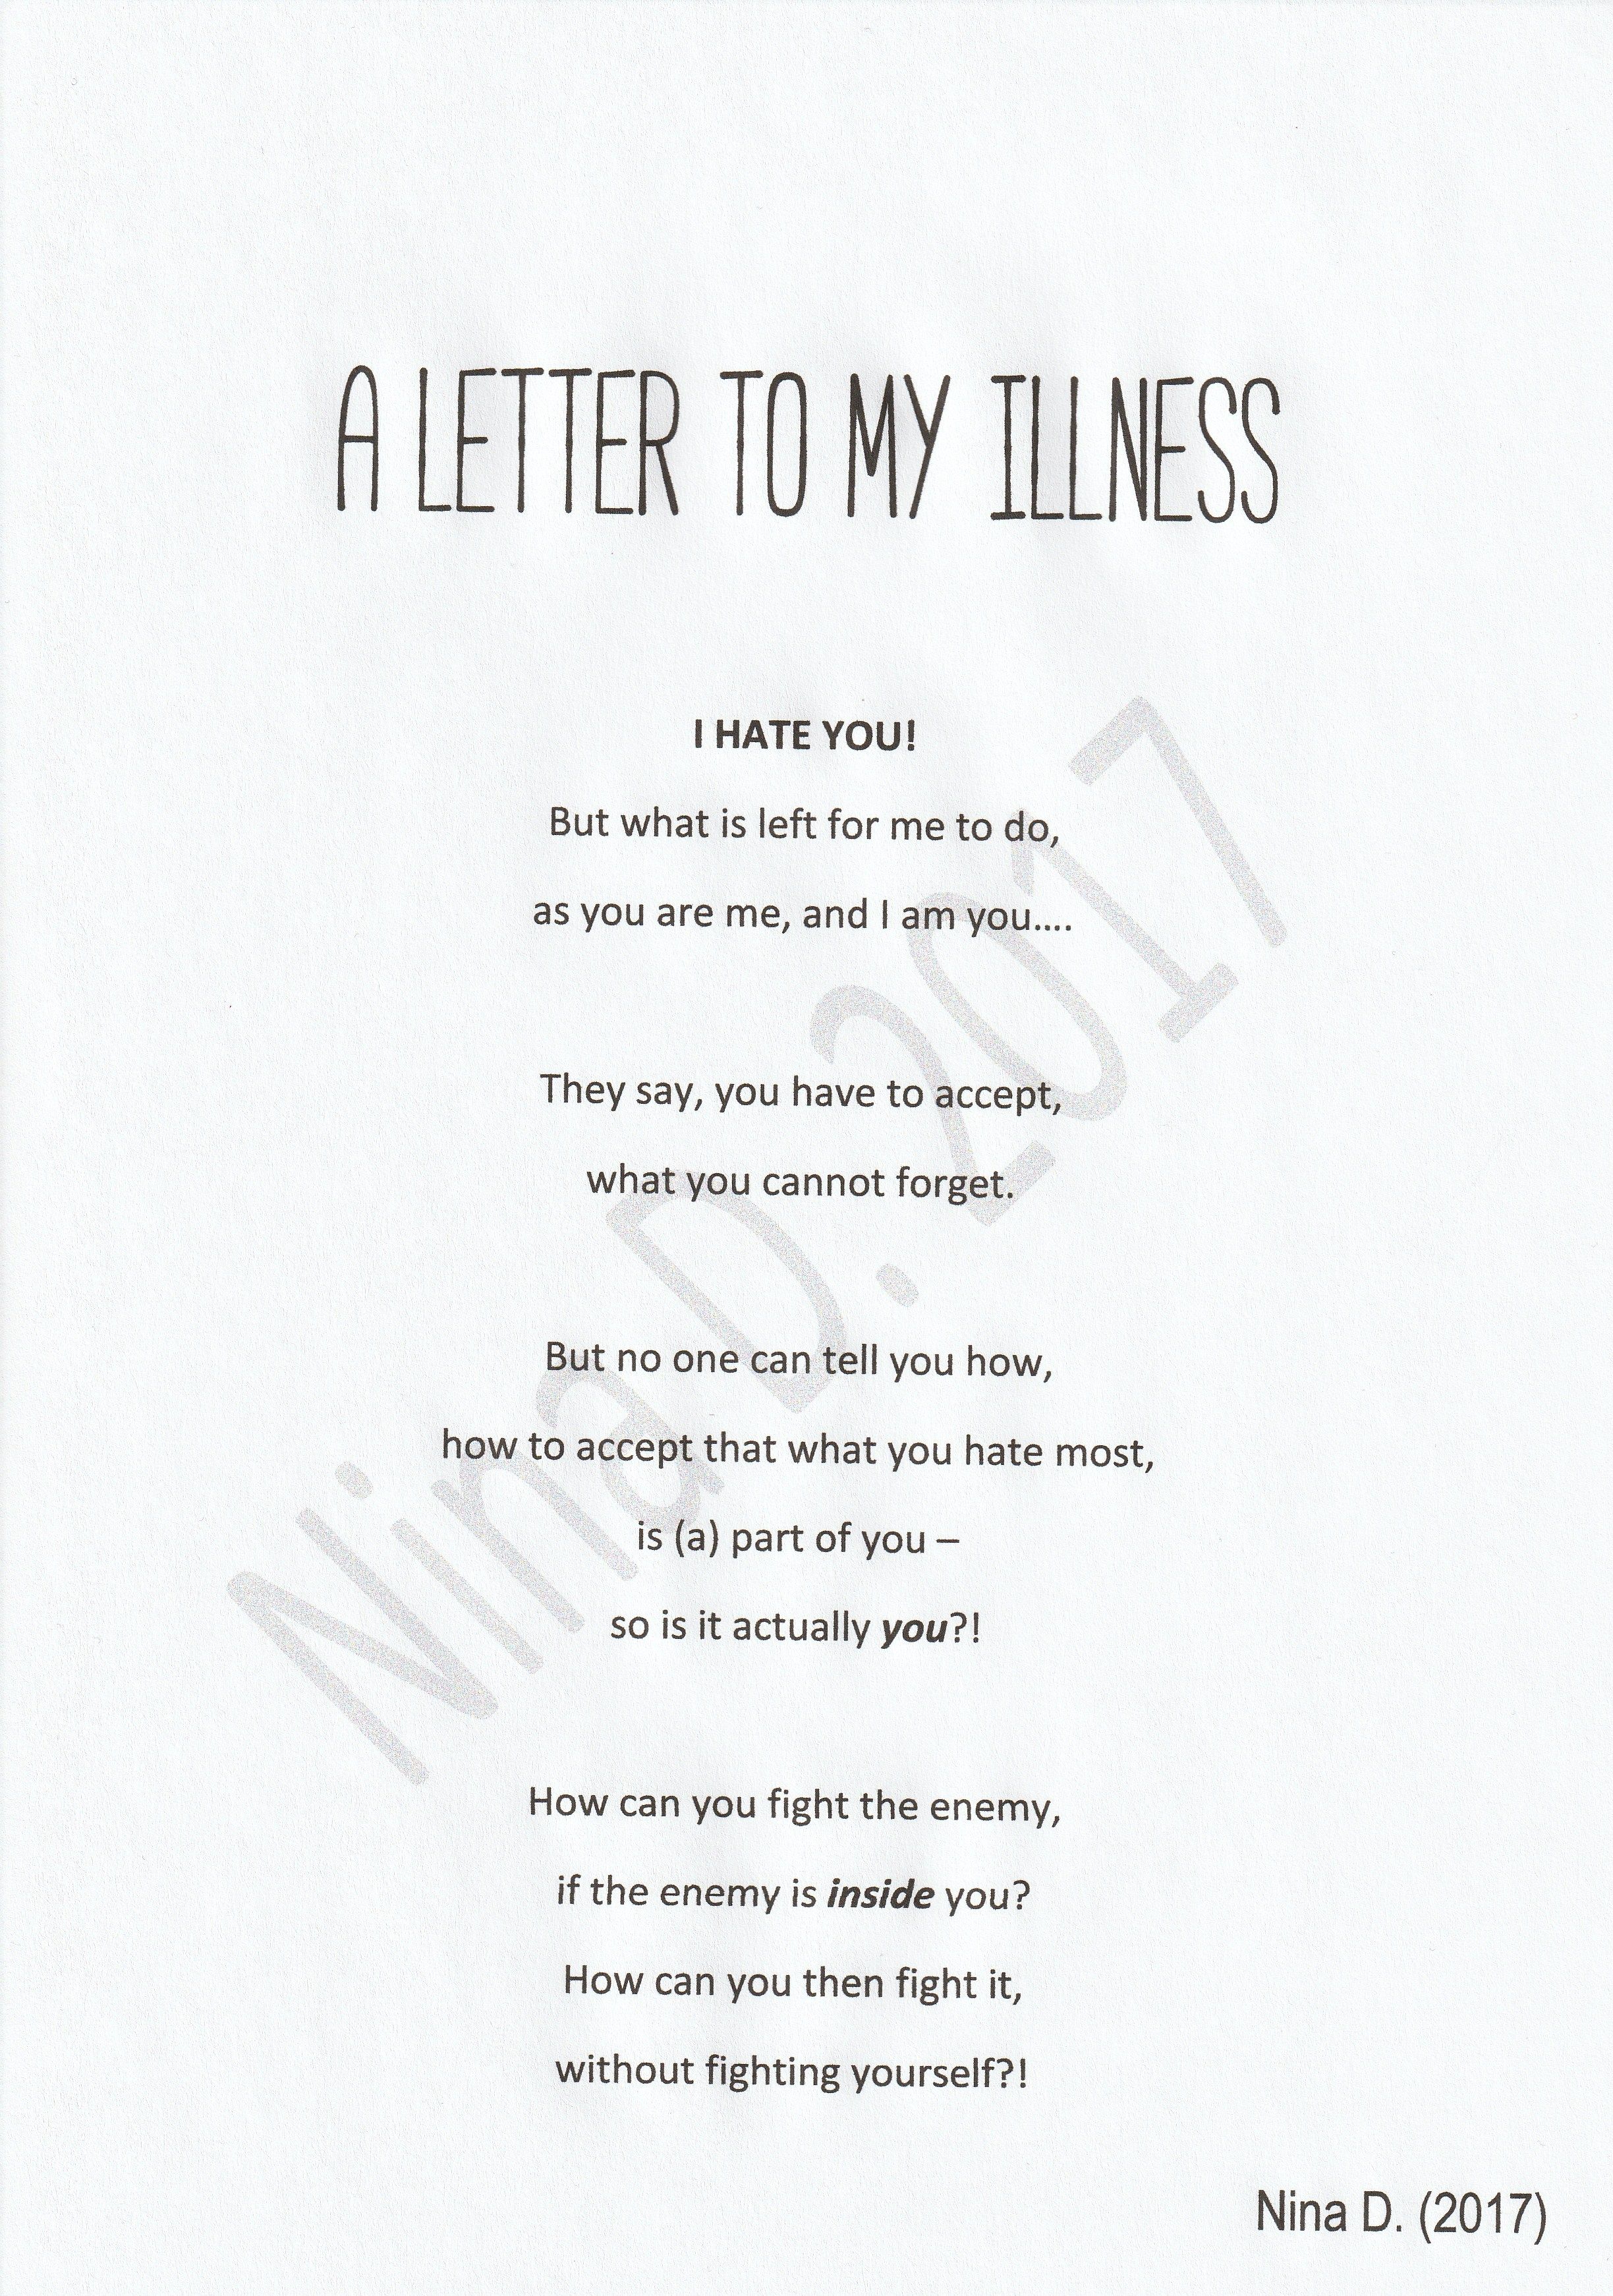 A Letter to my Illness WASSERZEICHEN.jpg